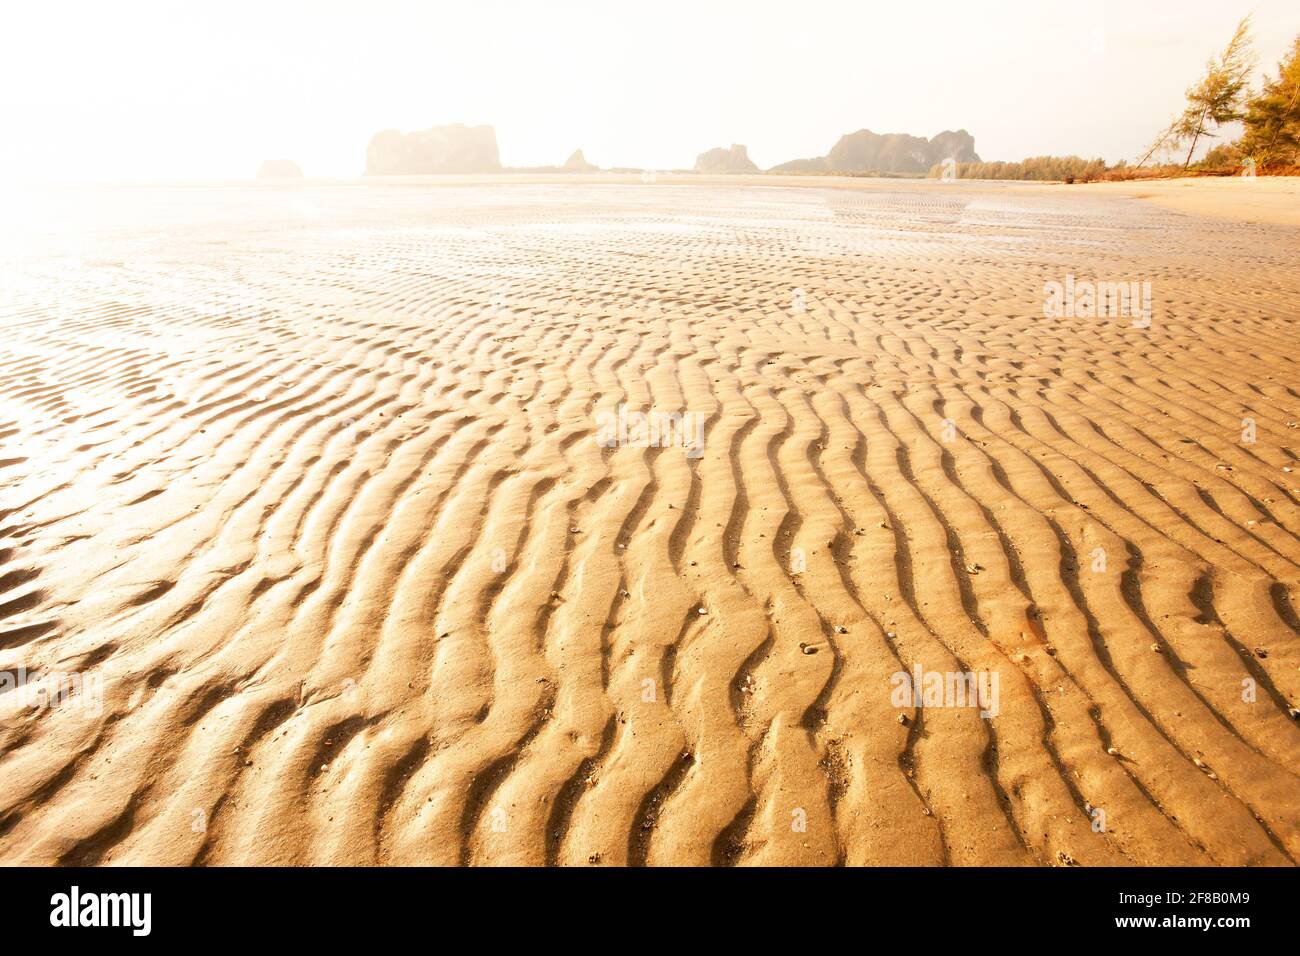 Landschaft von welligen Sandstrand des tropischen Meeres in der Dämmerung, glühende Sonne scheint auf goldenen sandigen, abstrakten Form von sandigen Wellen im Sommer. Trang, Thailand. Stockfoto